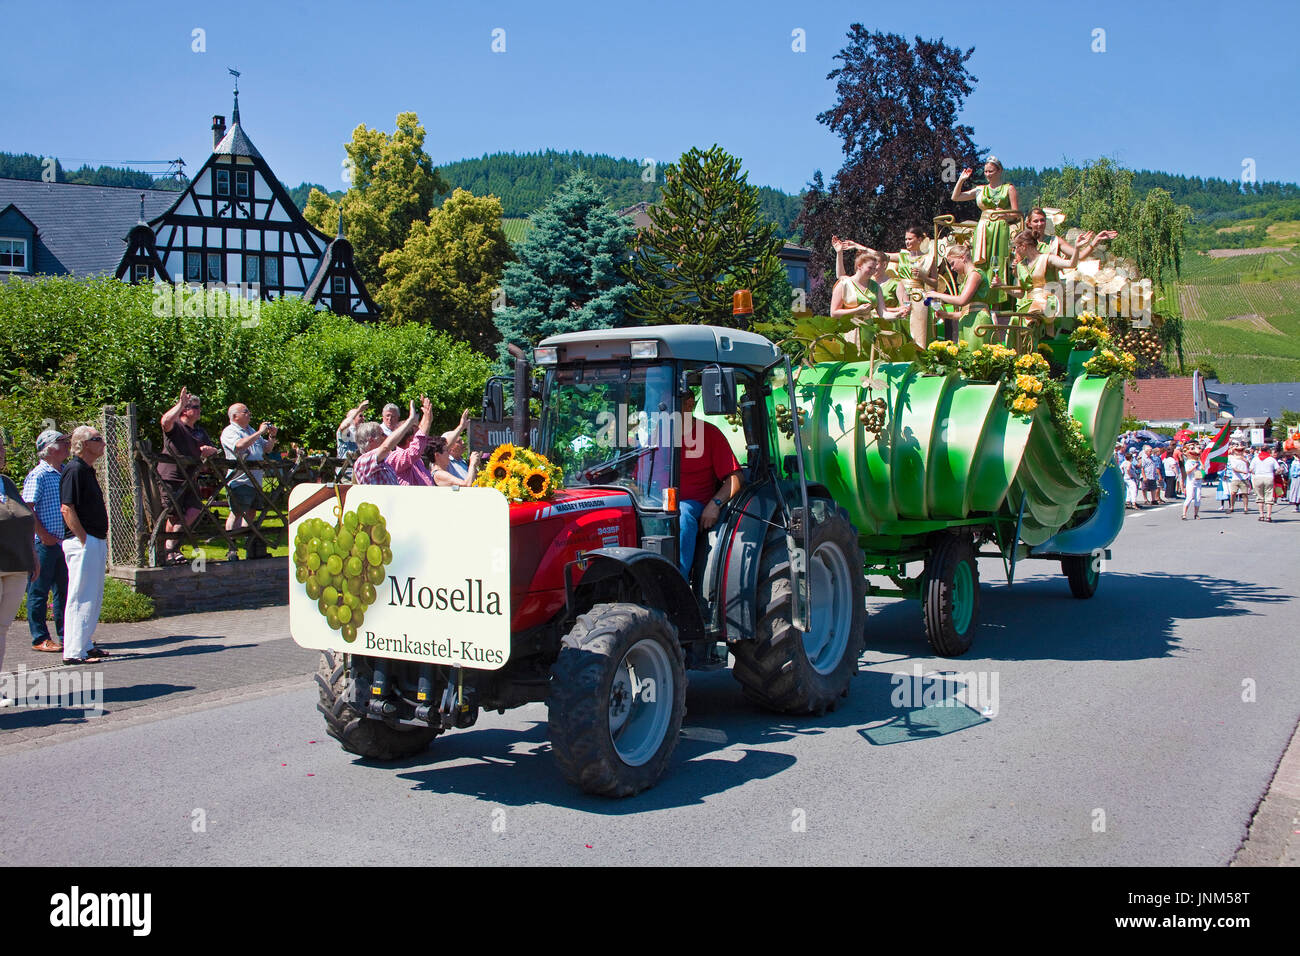 Festwagen Mosella Bernkastel beim internationalen Trachtenfest in Kröv, Mosel, Mittelmosel, Rheinland-Pfalz, Deutschland, Europa | International festi Stock Photo